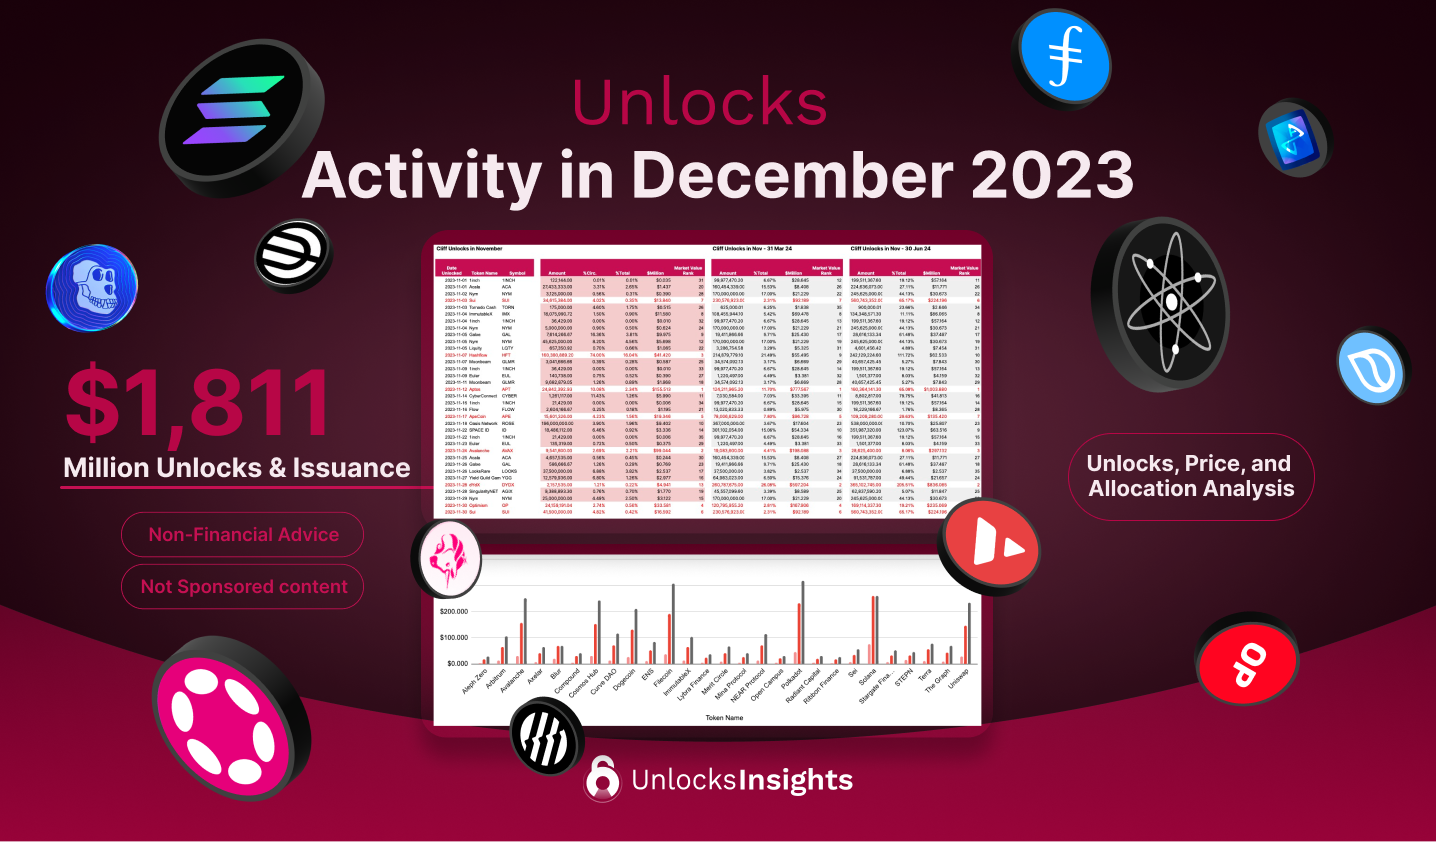 Unlocks Activity in December 2023